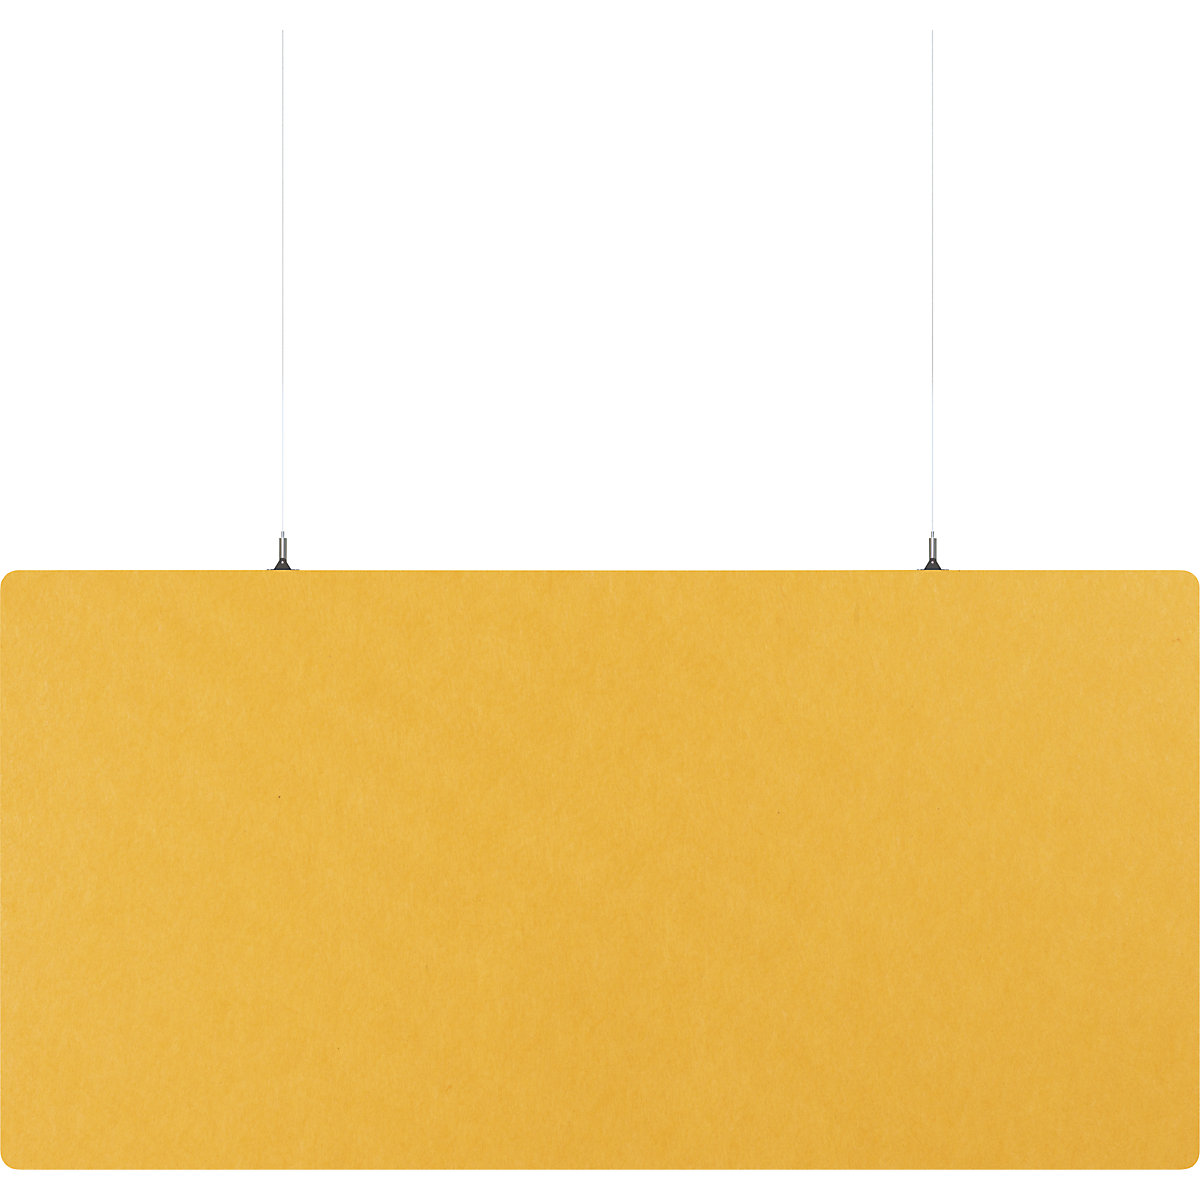 Akoestisch plafondpaneel, PET-vilt – eurokraft basic, h x b = 600 x 1200 mm, rechthoekige vorm, geel, vanaf 10 stuks-5